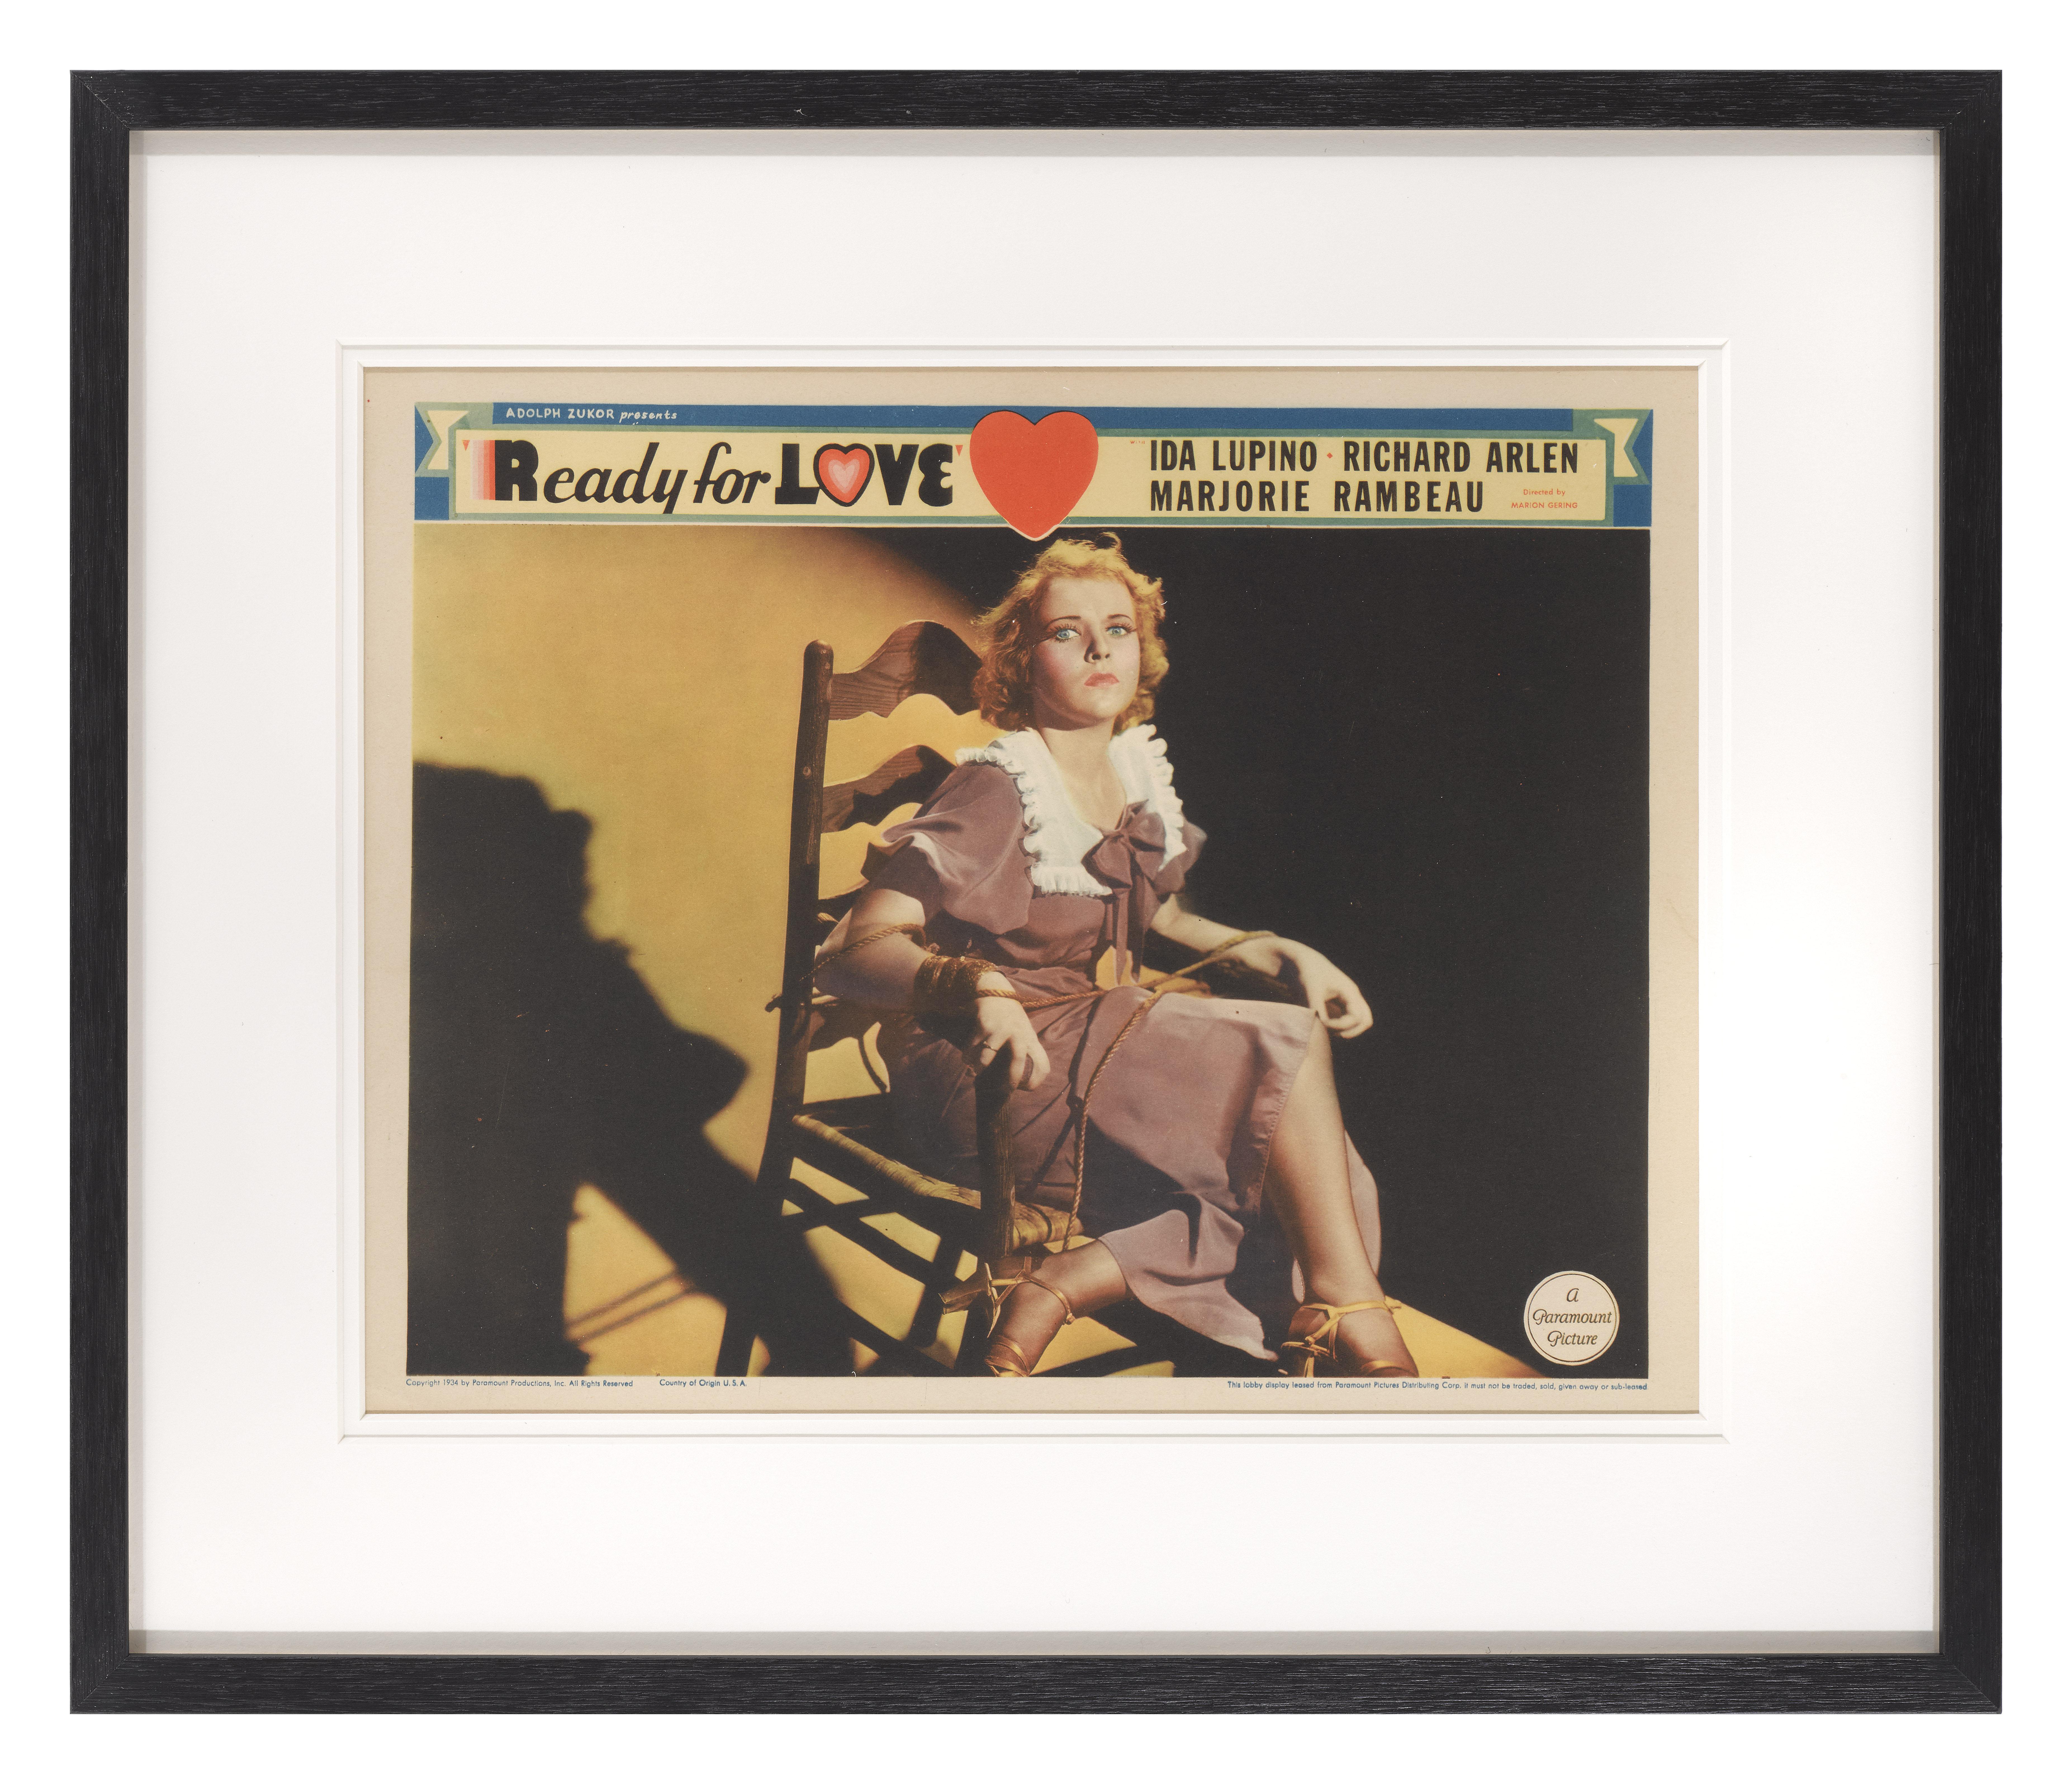 Original US-Lobbykarte für die Liebeskomödie Ready for Love von 1934.
Dieser Film mit Ida Lupino und Richard Arlen in den Hauptrollen wurde von Marion Gering inszeniert.
Diese Lobbykarte ist konservierend gerahmt mit UV-Plexiglas in einem